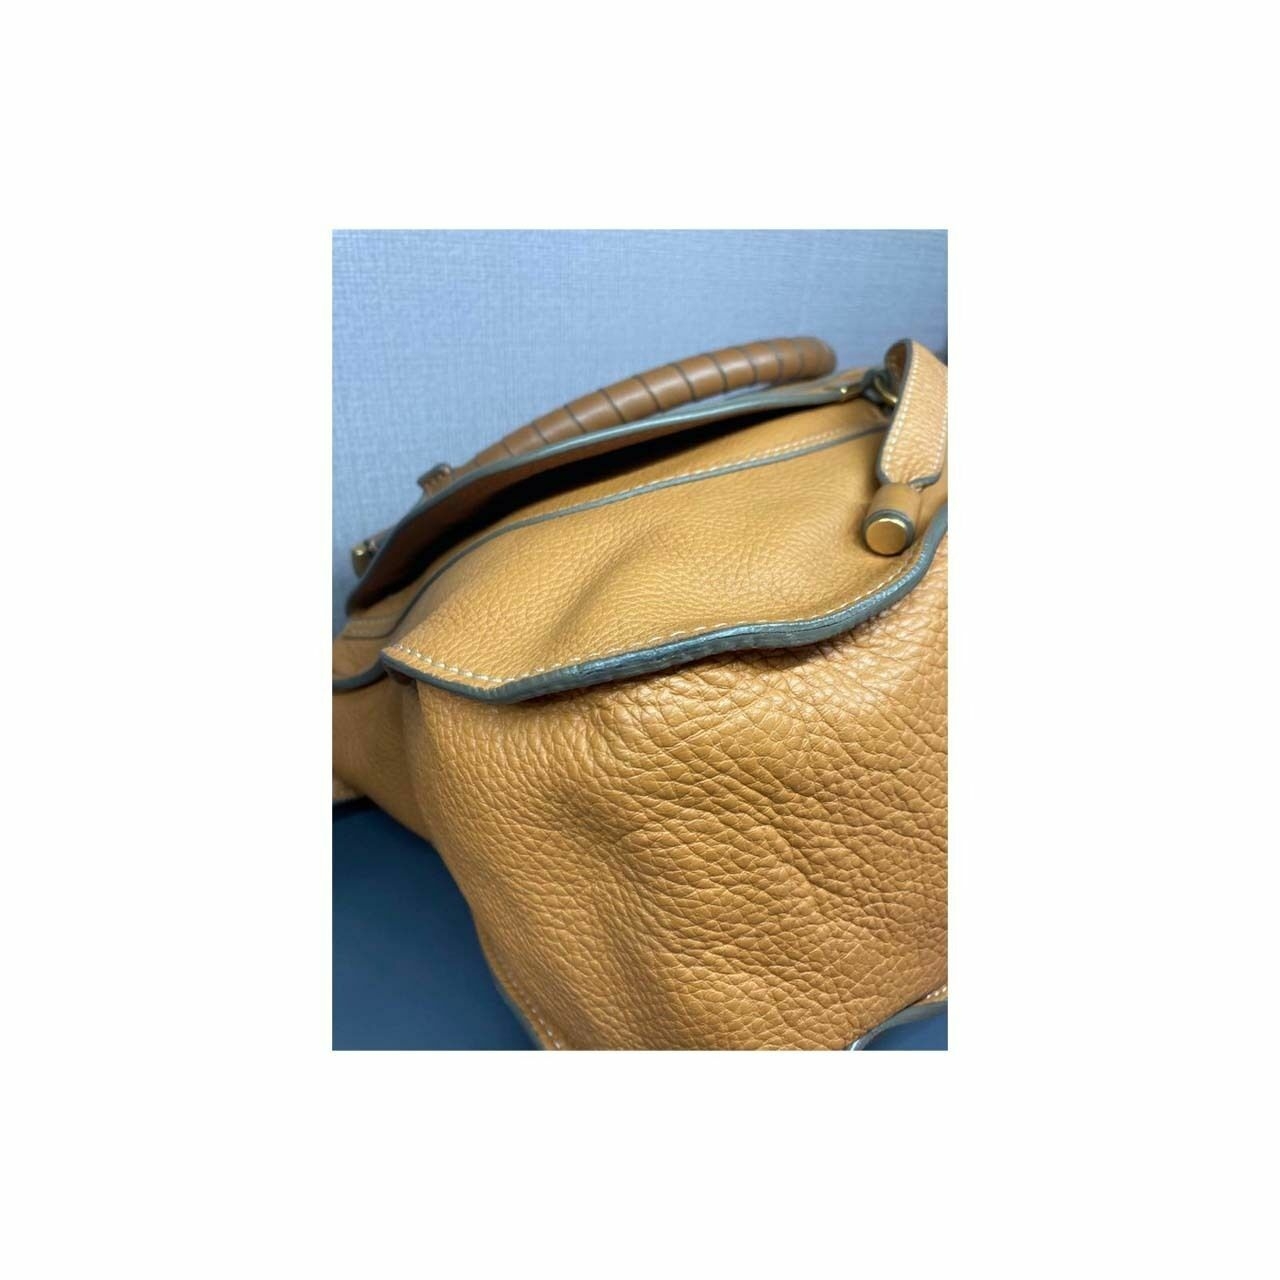 Chloe Marcie Mustard Handbag